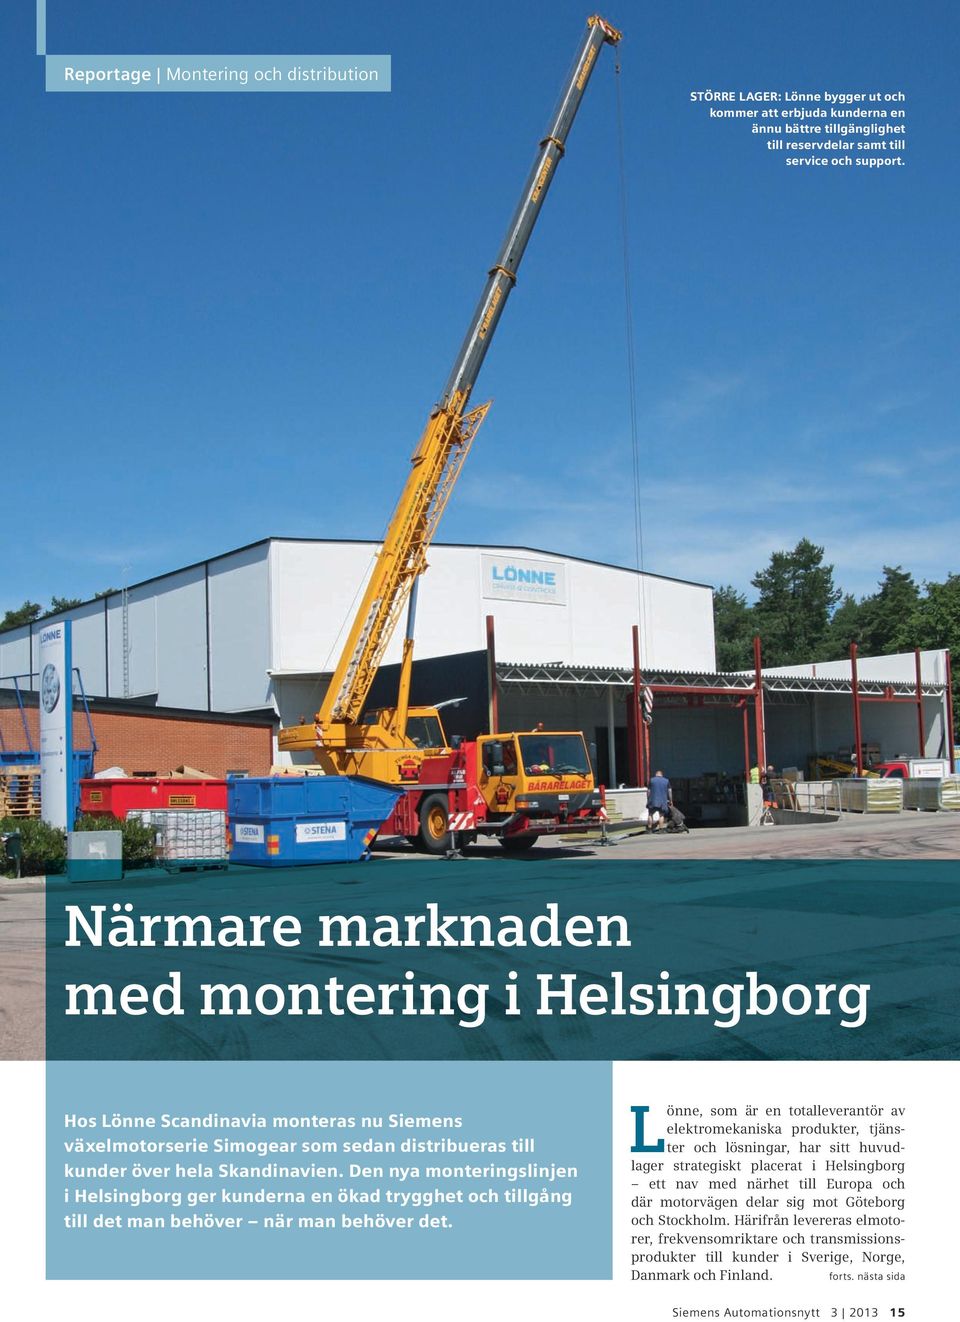 Den nya monteringslinjen i Helsingborg ger kunderna en ökad trygghet och tillgång till det man behöver när man behöver det.